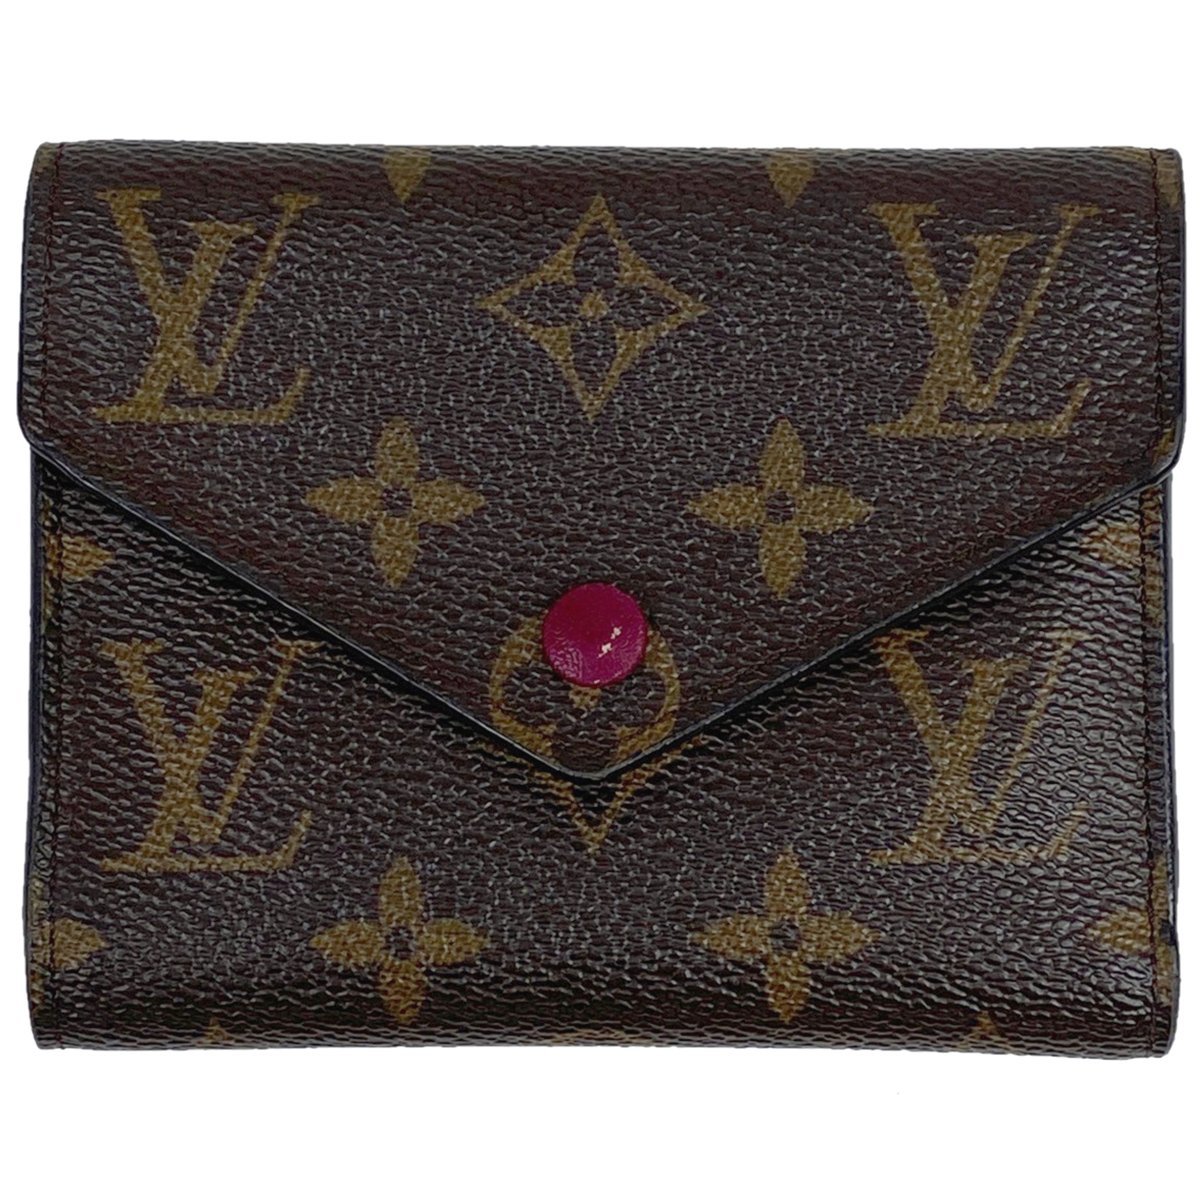 ルイ・ヴィトン Louis Vuitton ポルトフォイユ ヴィクトリーヌ 二つ折り財布 モノグラム ブラウン フューシャ(ピンク) M41938 【中古】